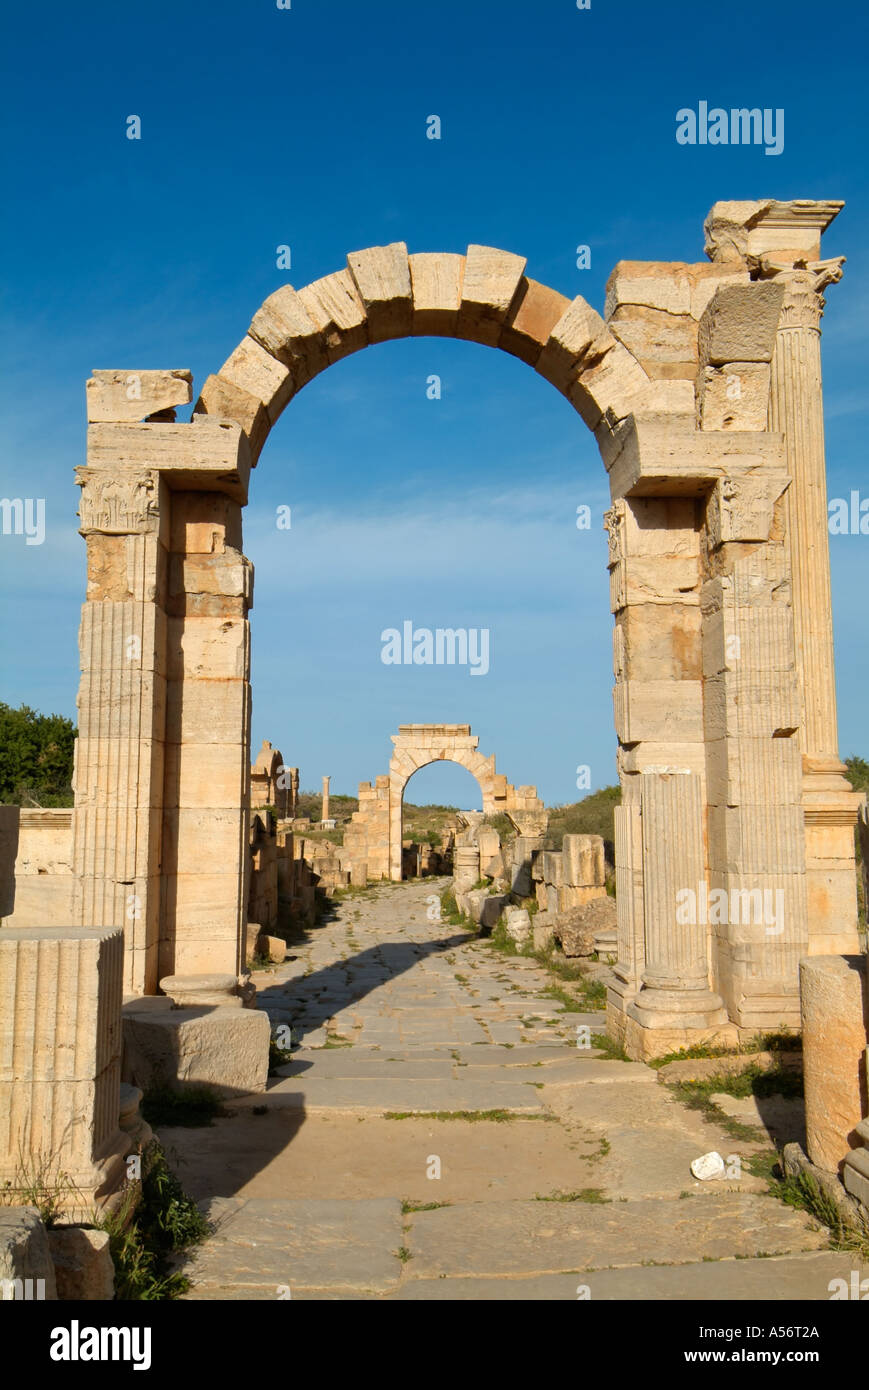 L'arc de Trajan et d'Arche de Tibère sur la Via Trionfale (cardo), les ruines romaines de Leptis Magna, Libye Banque D'Images